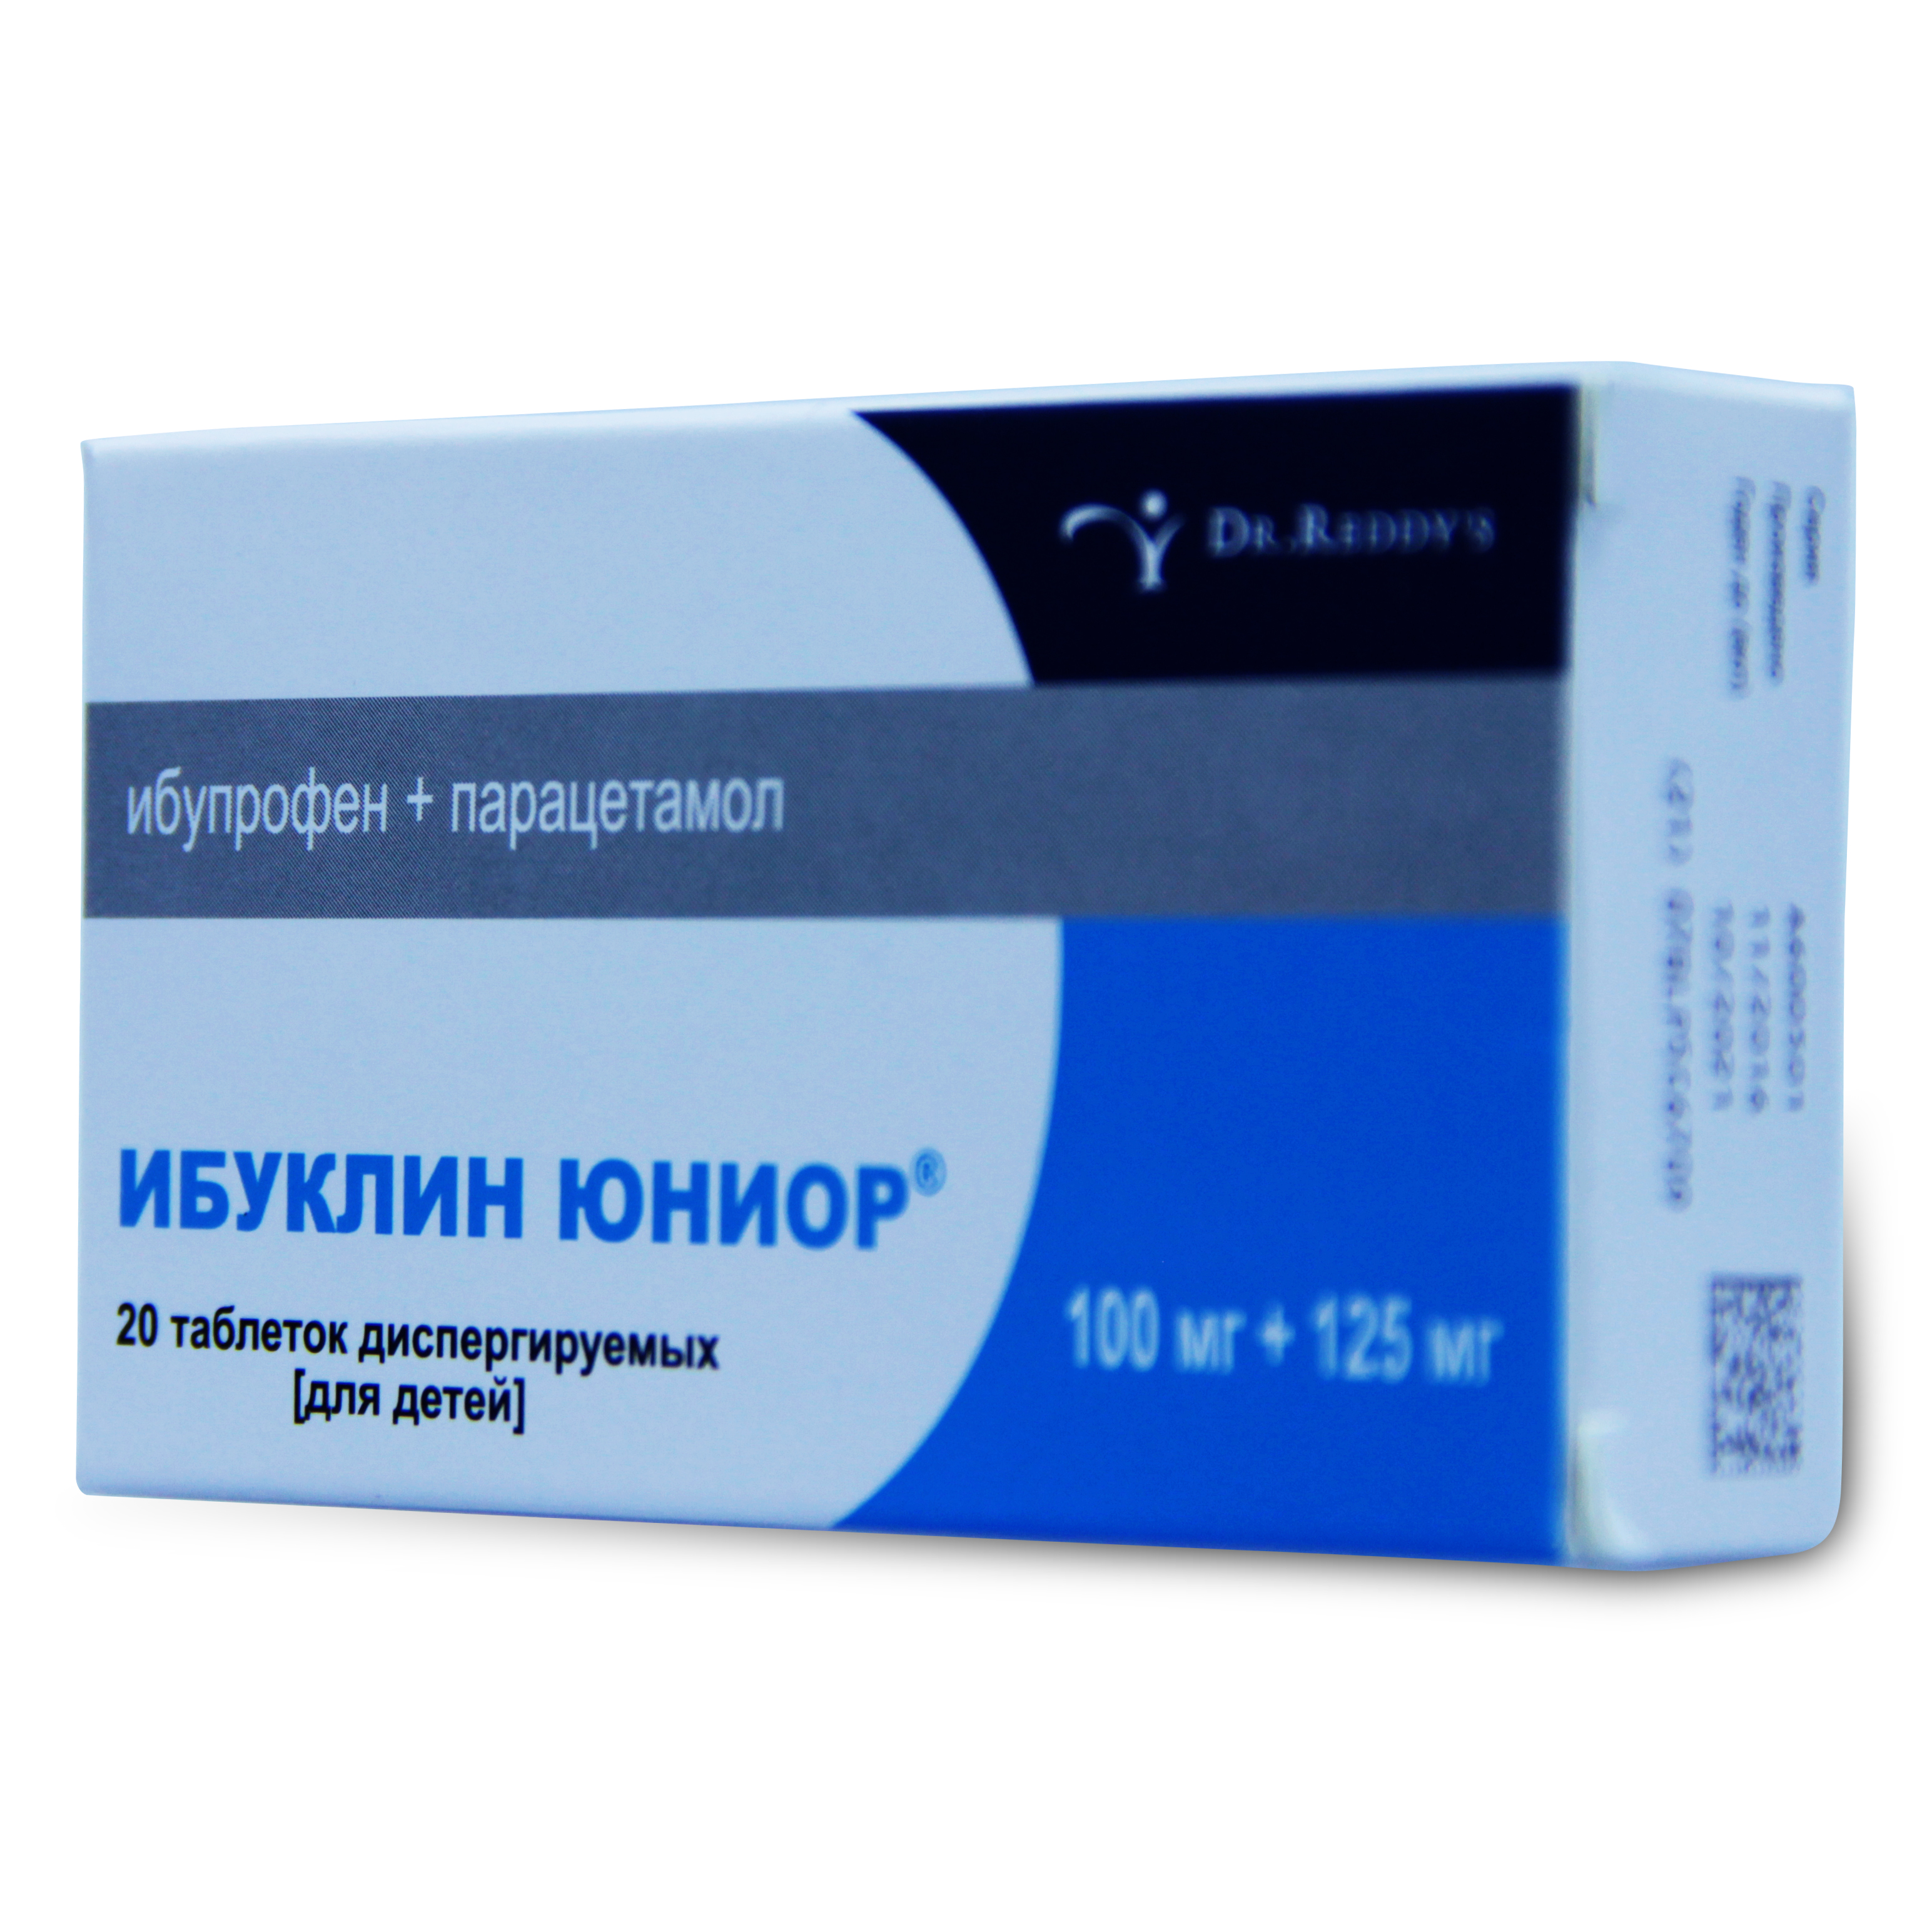 Ибуклин Юниор таблетки диспергируемые для детей 100 мг+125 мг 20 шт.